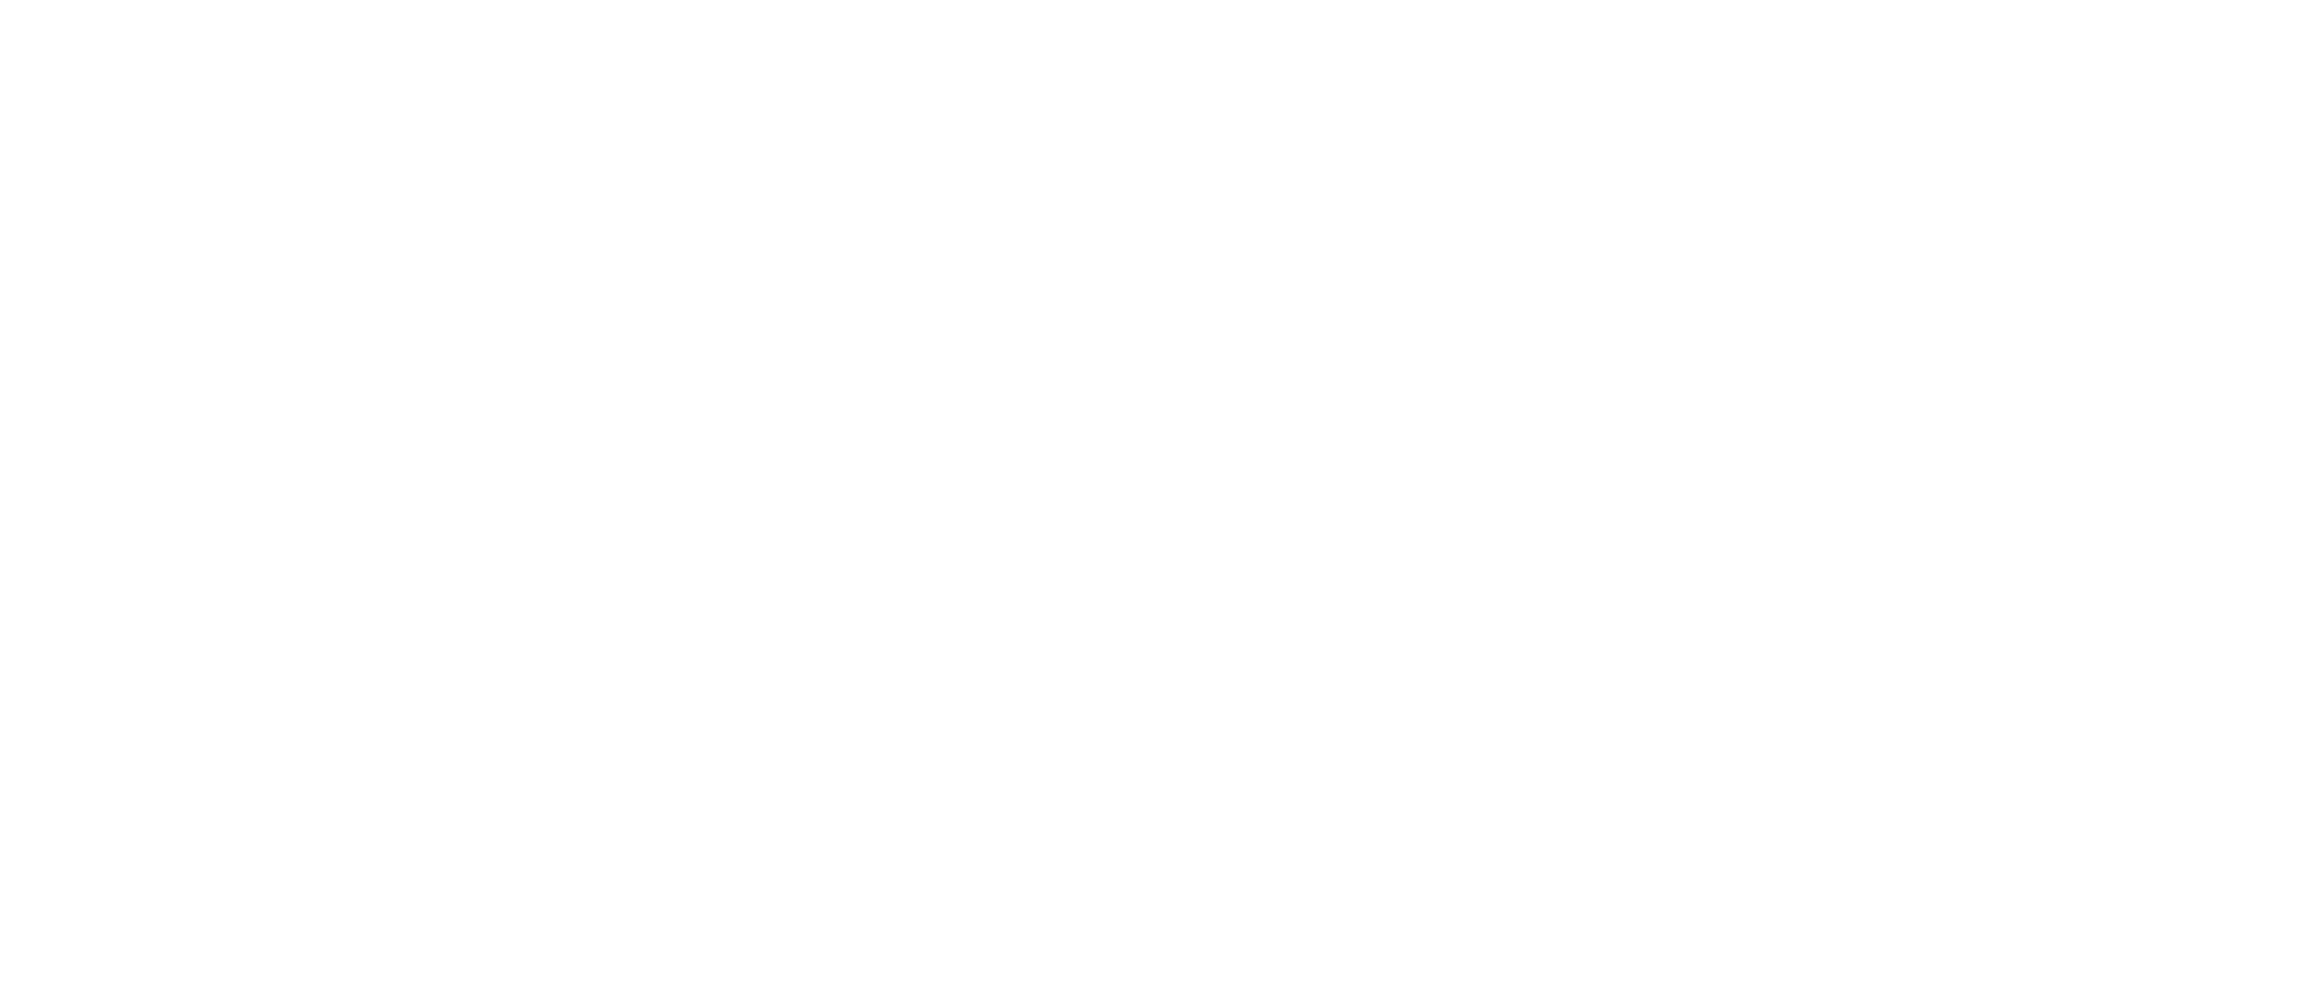 Tiantie Group Logo